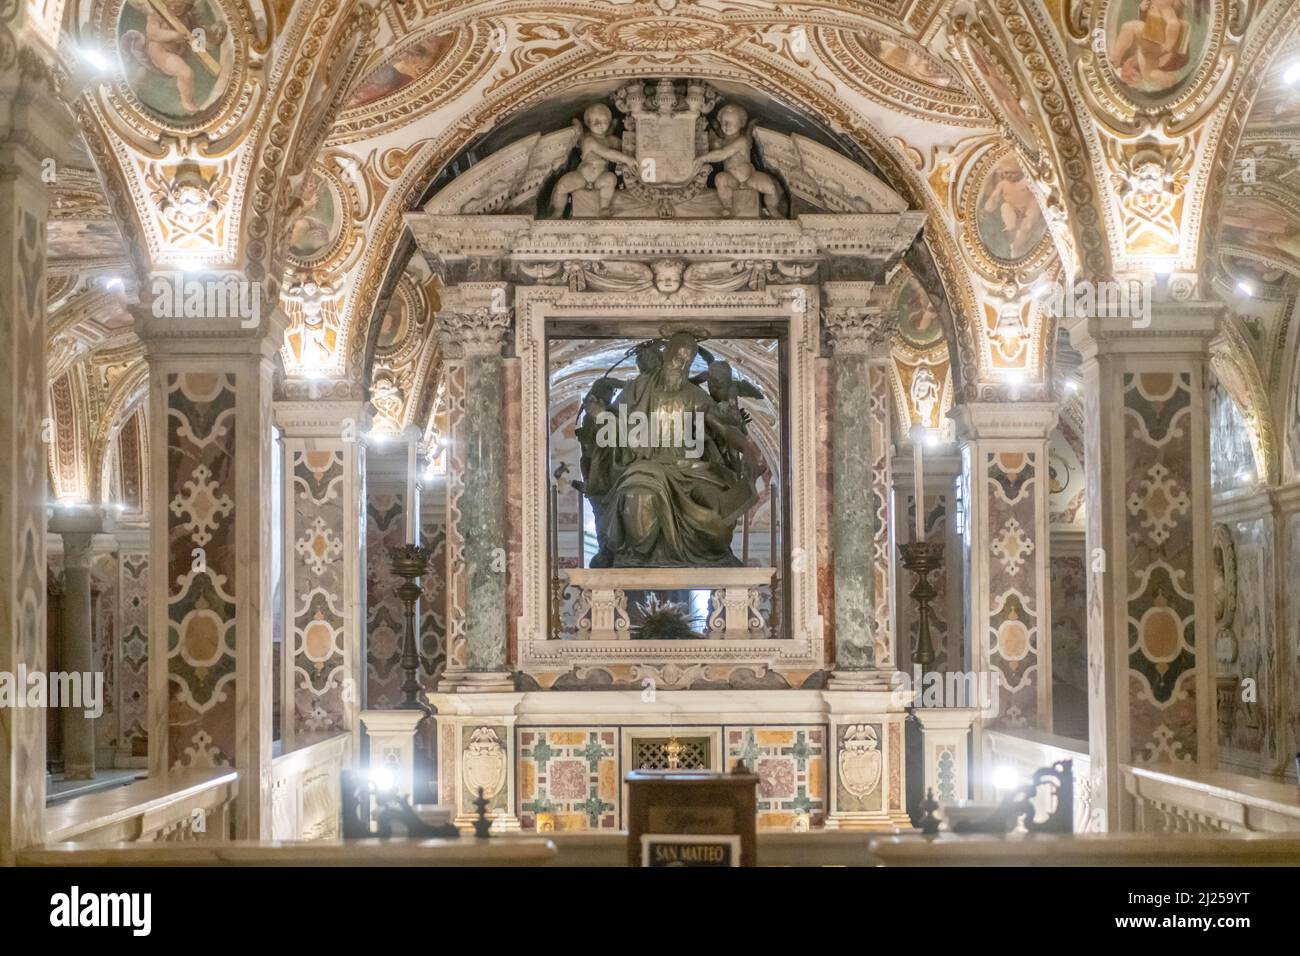 La crypte baroque qui a conservé les vestiges de San Matteo depuis 1080 Banque D'Images